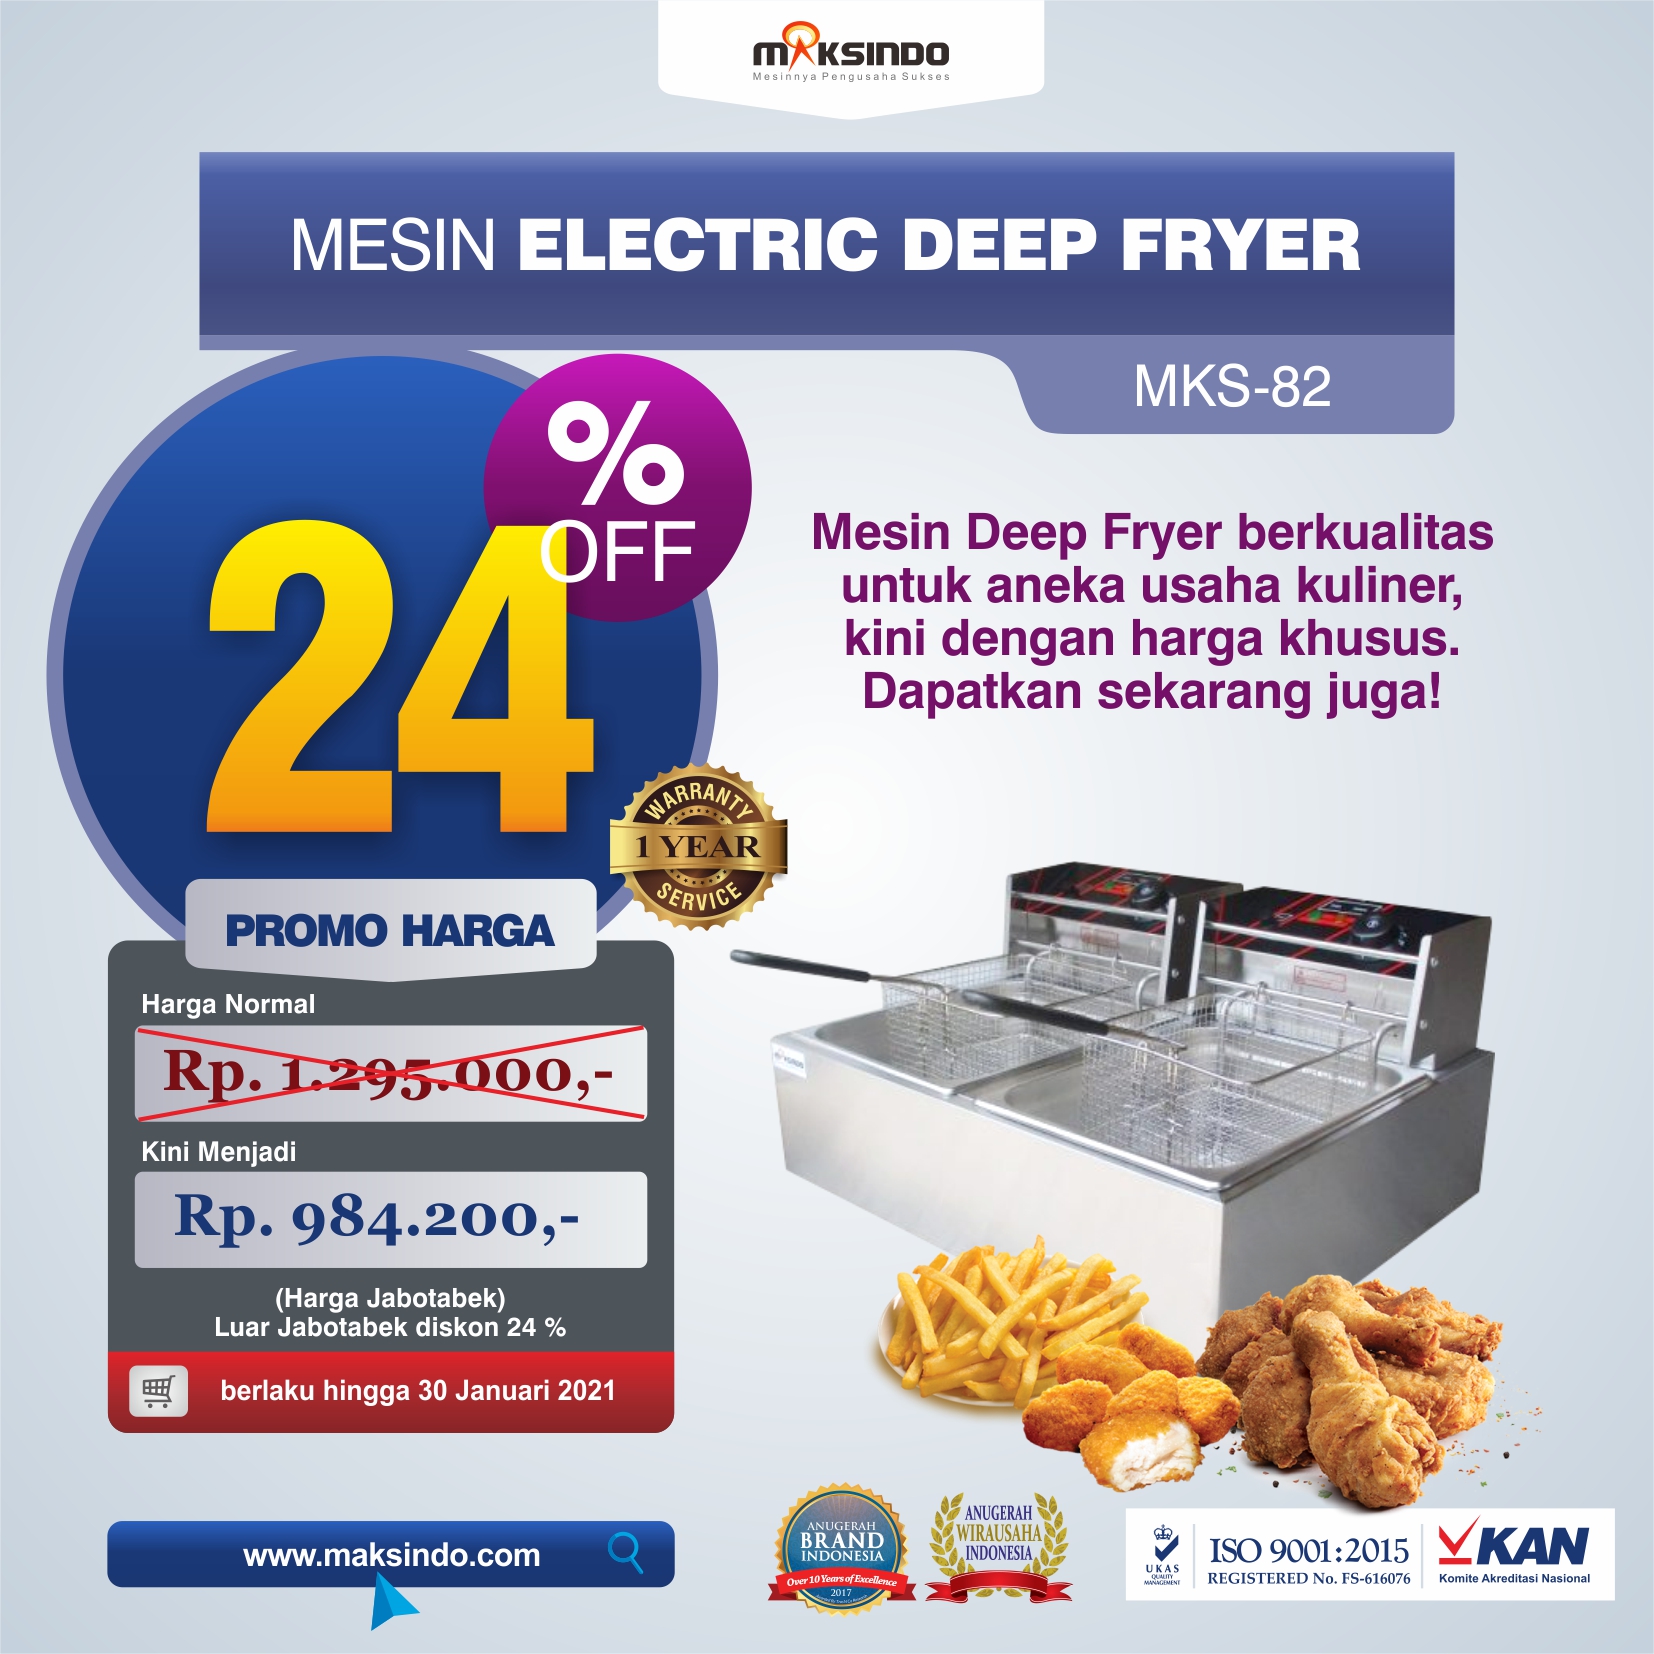 Jual Mesin Electric Deep Fryer MKS-82 di Semarang